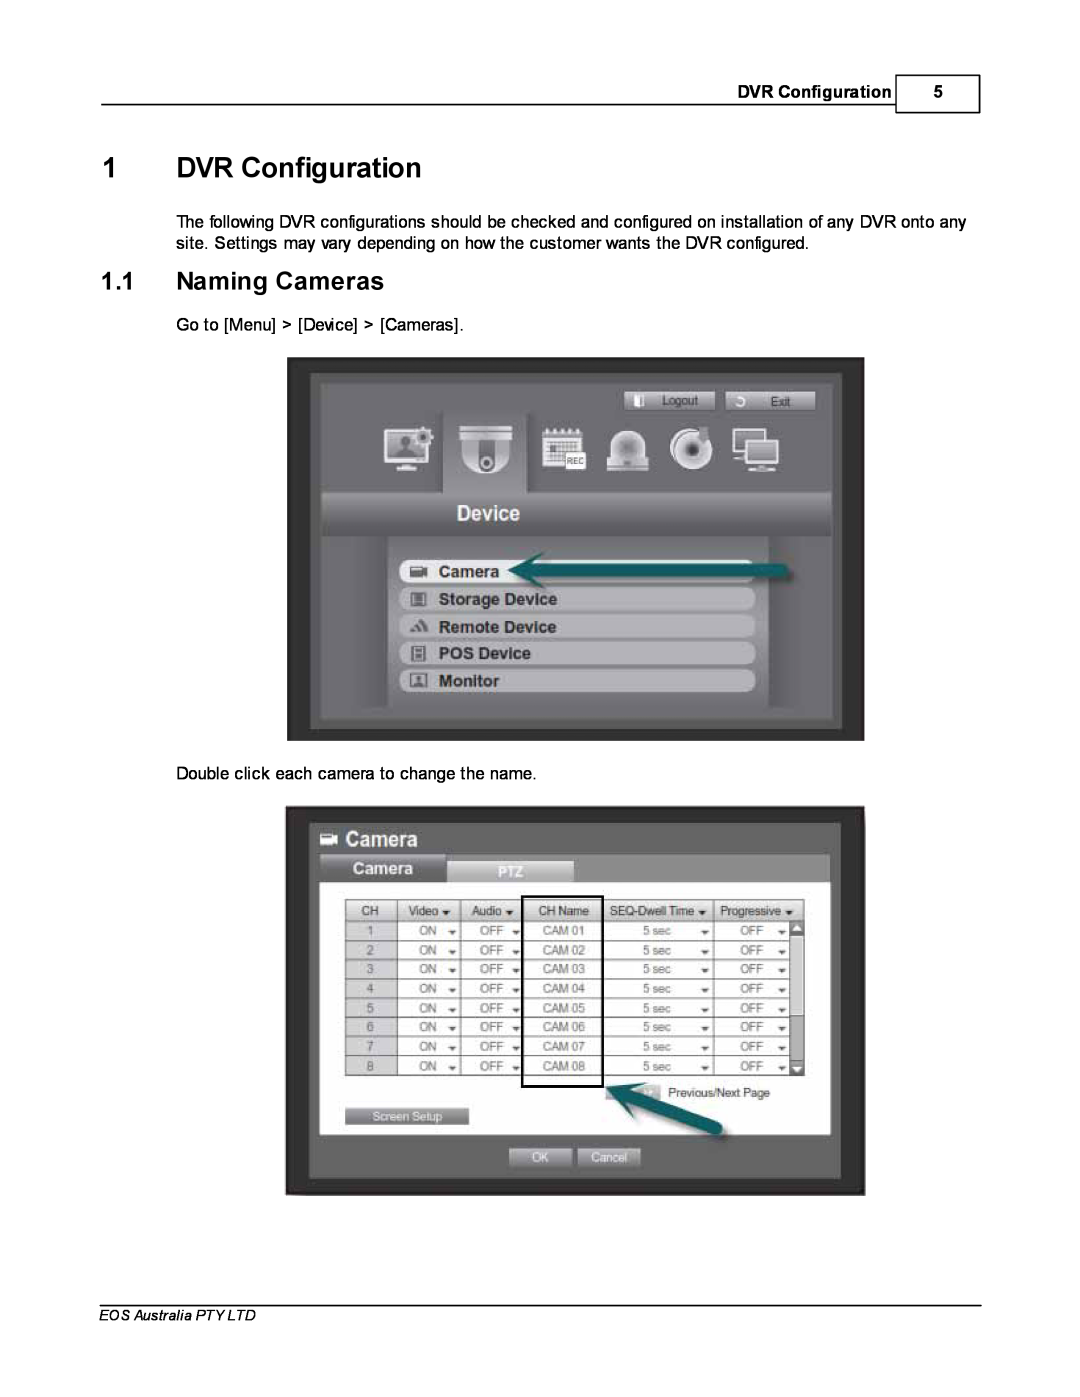 Samsung SDR4200 manual 1DVR Configuration, 1.1Naming Cameras 